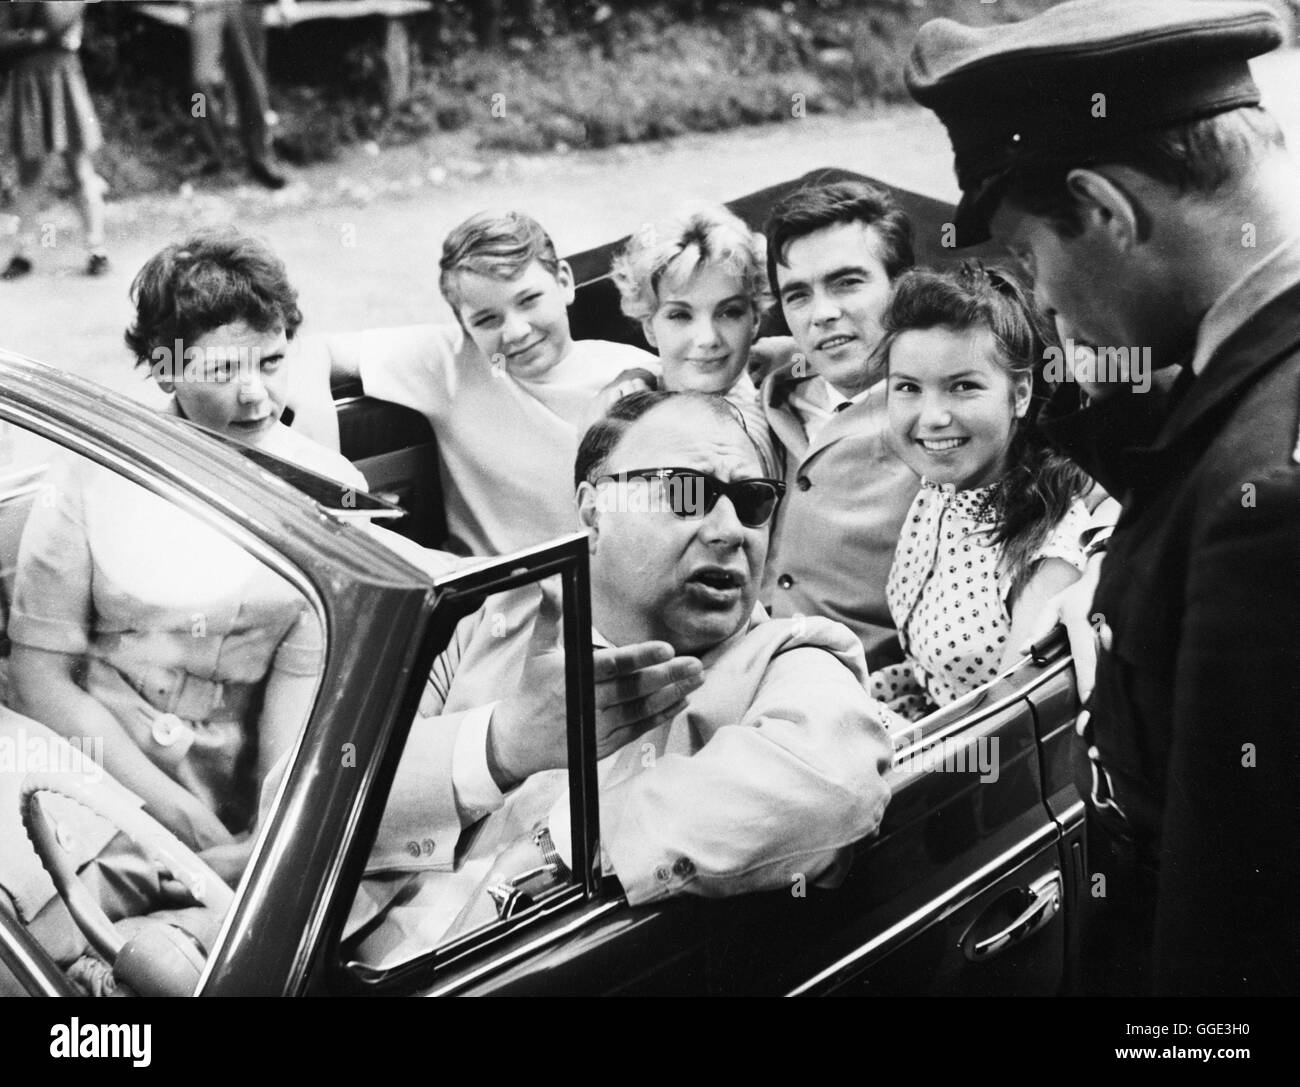 NATÜRLICH DIE AUTOFAHRER / Deutschland 1959 / Erich Engels 'Halb den Wagen vollgeladen': HEINZ ERHARDT, RUTH STEPHAN, ARNE MADIN, MARIA PERSCHY, ERIK SCHUHMANN, MARGITTA SCHERR in 'Natürlich die Autofahrer', 1959 Regie: Erich Engels Stock Photo